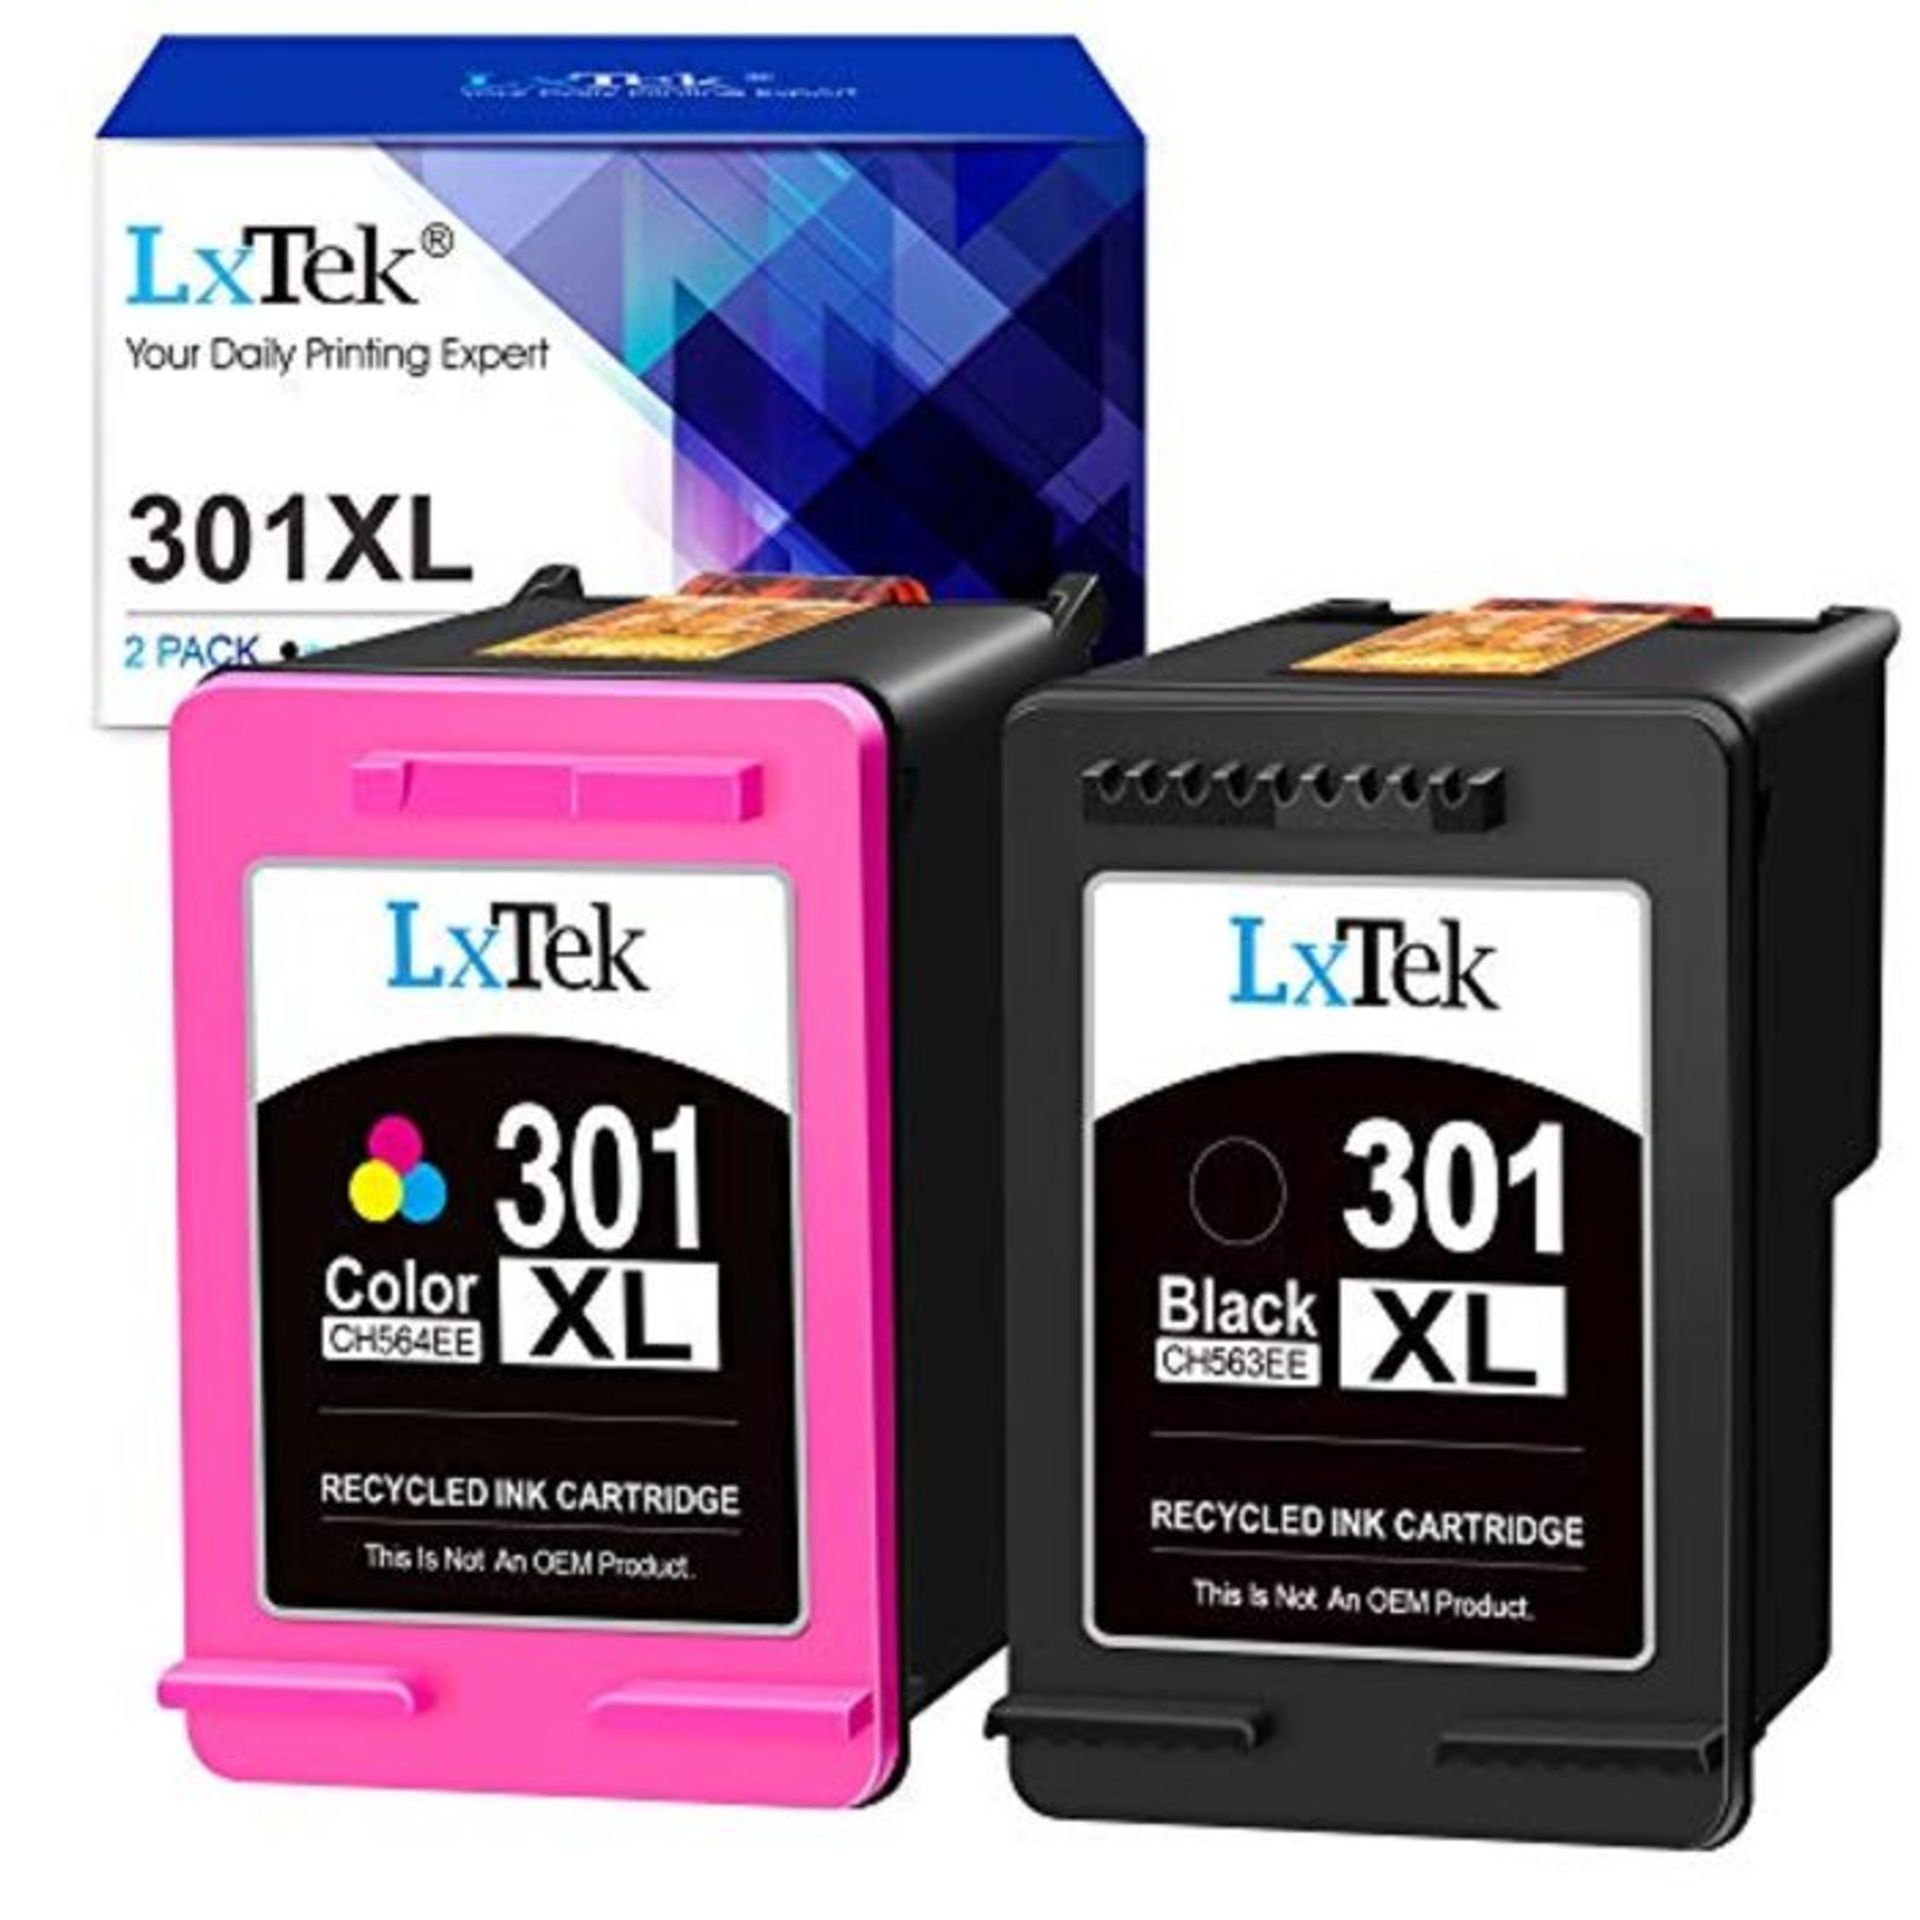 LxTek Remanufactured for HP 301 301XL Ink Cartridges for HP Deskjet 1000 1010 1050 151